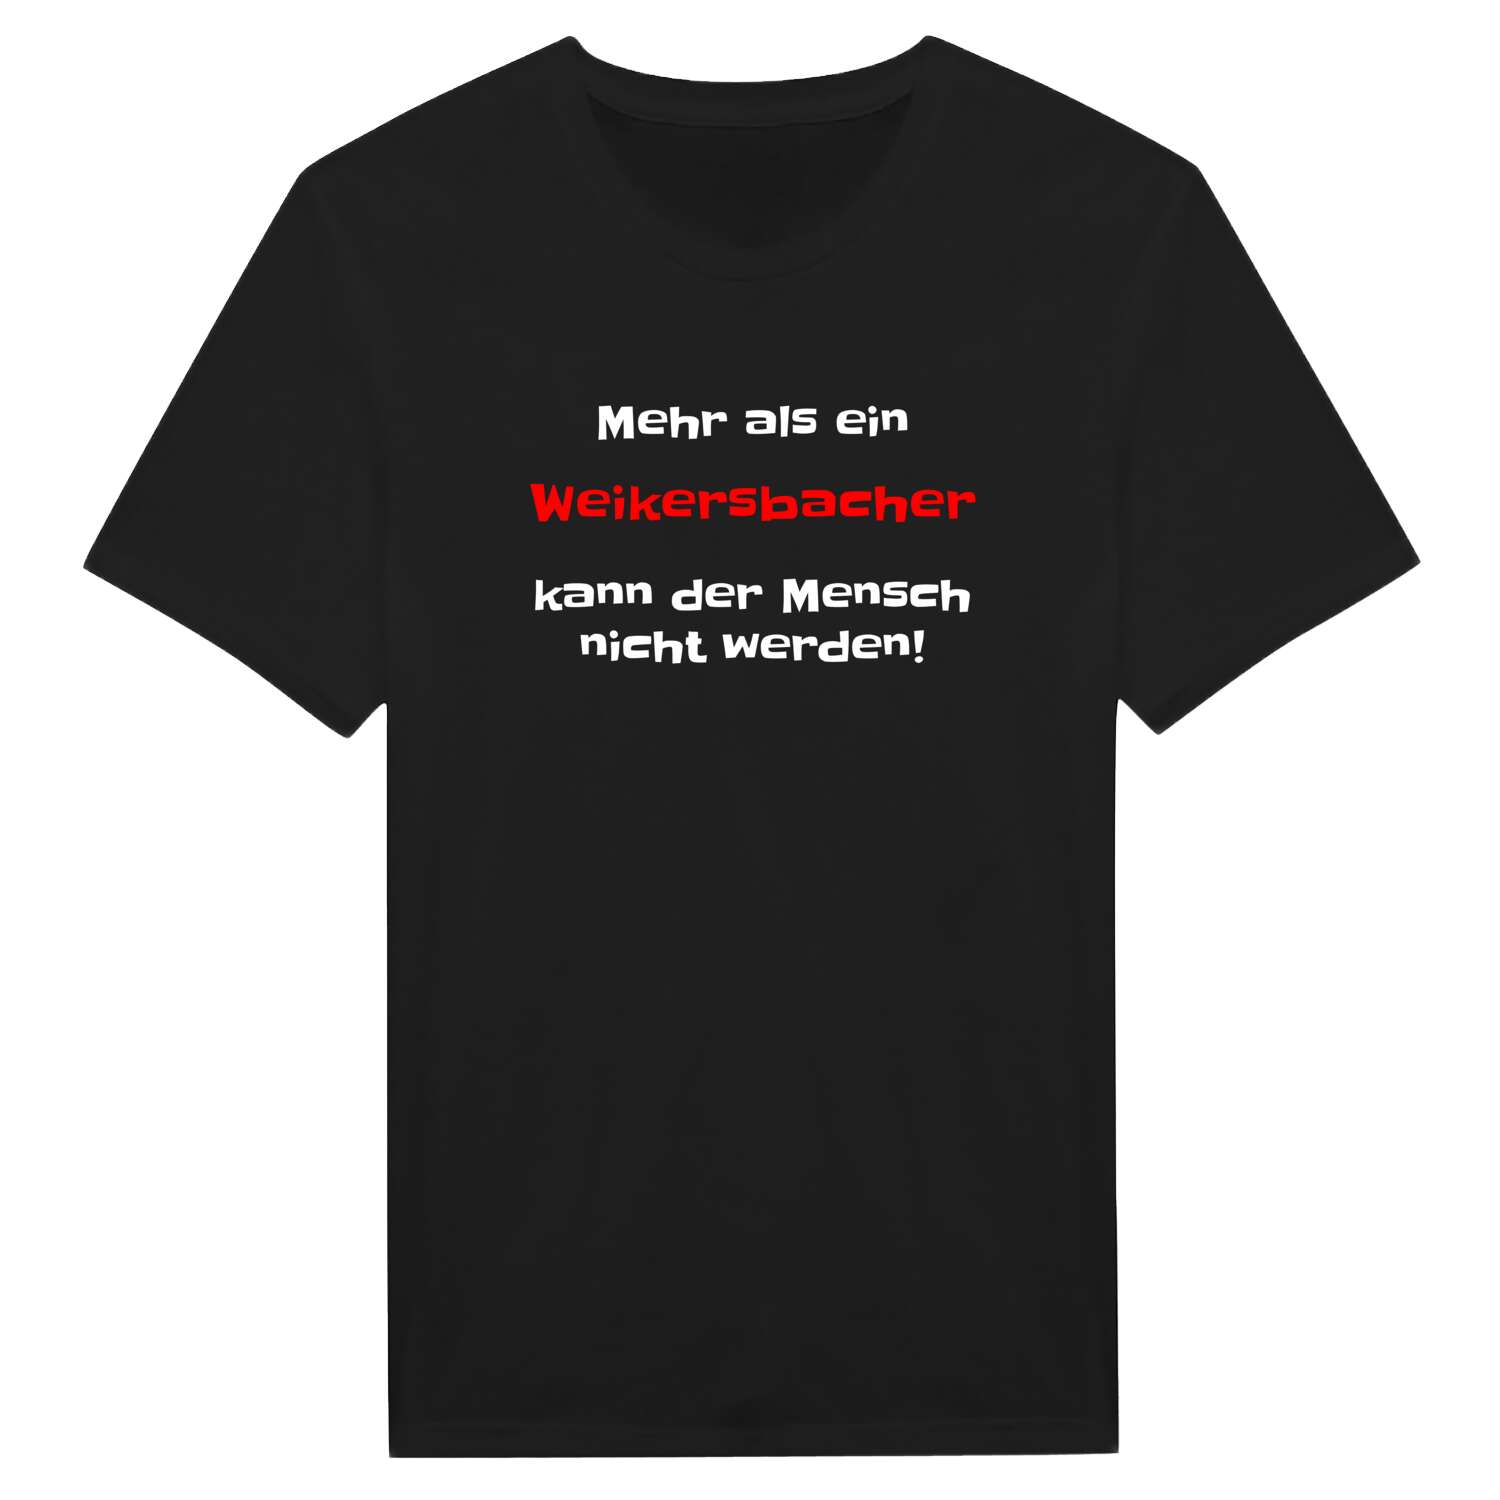 Weikersbach T-Shirt »Mehr als ein«